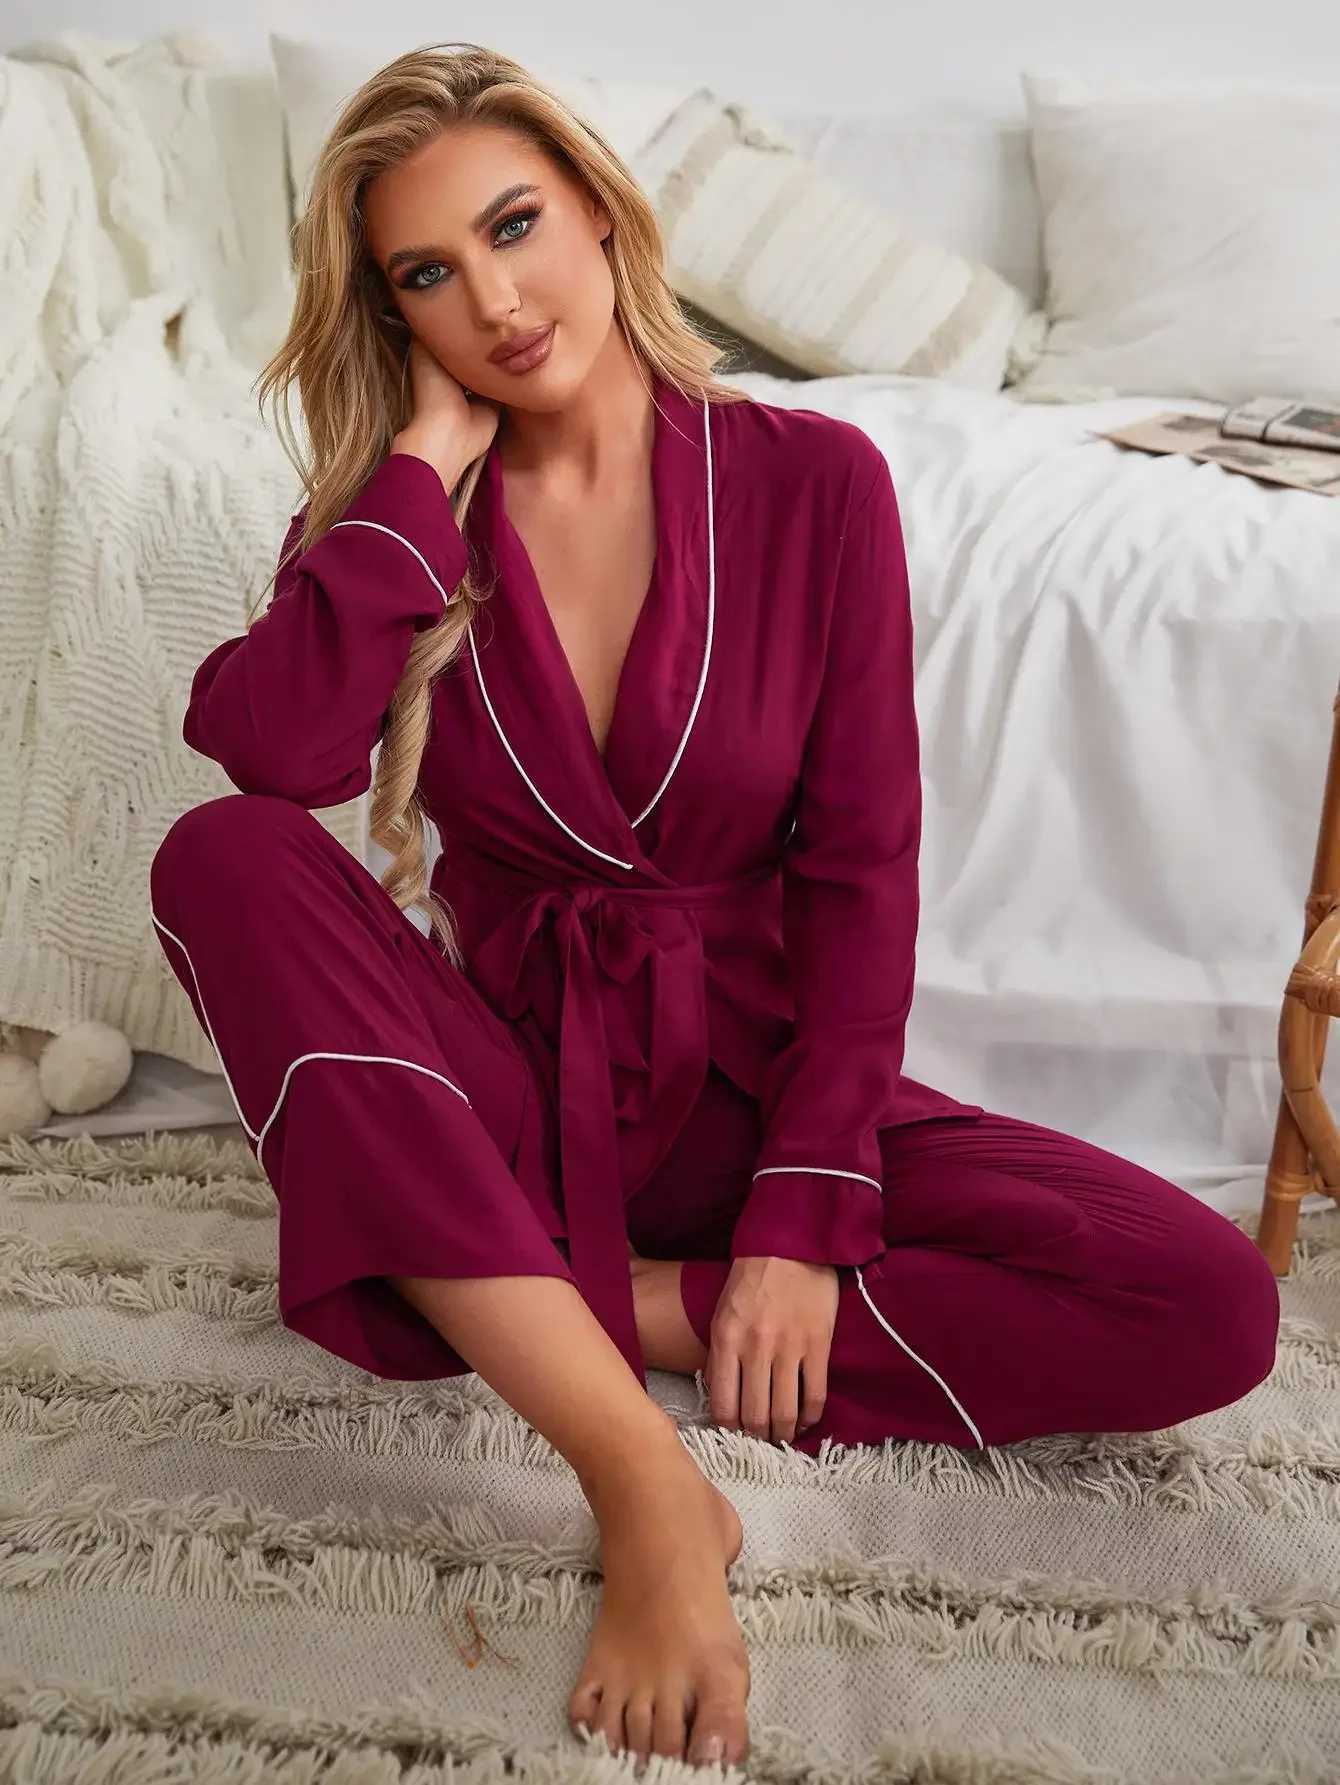 Women's Sleepwear Solid Women Pajama Set Wrap V Neck Long Slves Waist Belt Top Long Pants Slpwear Female Nightwear Homwear Cloth Y240426